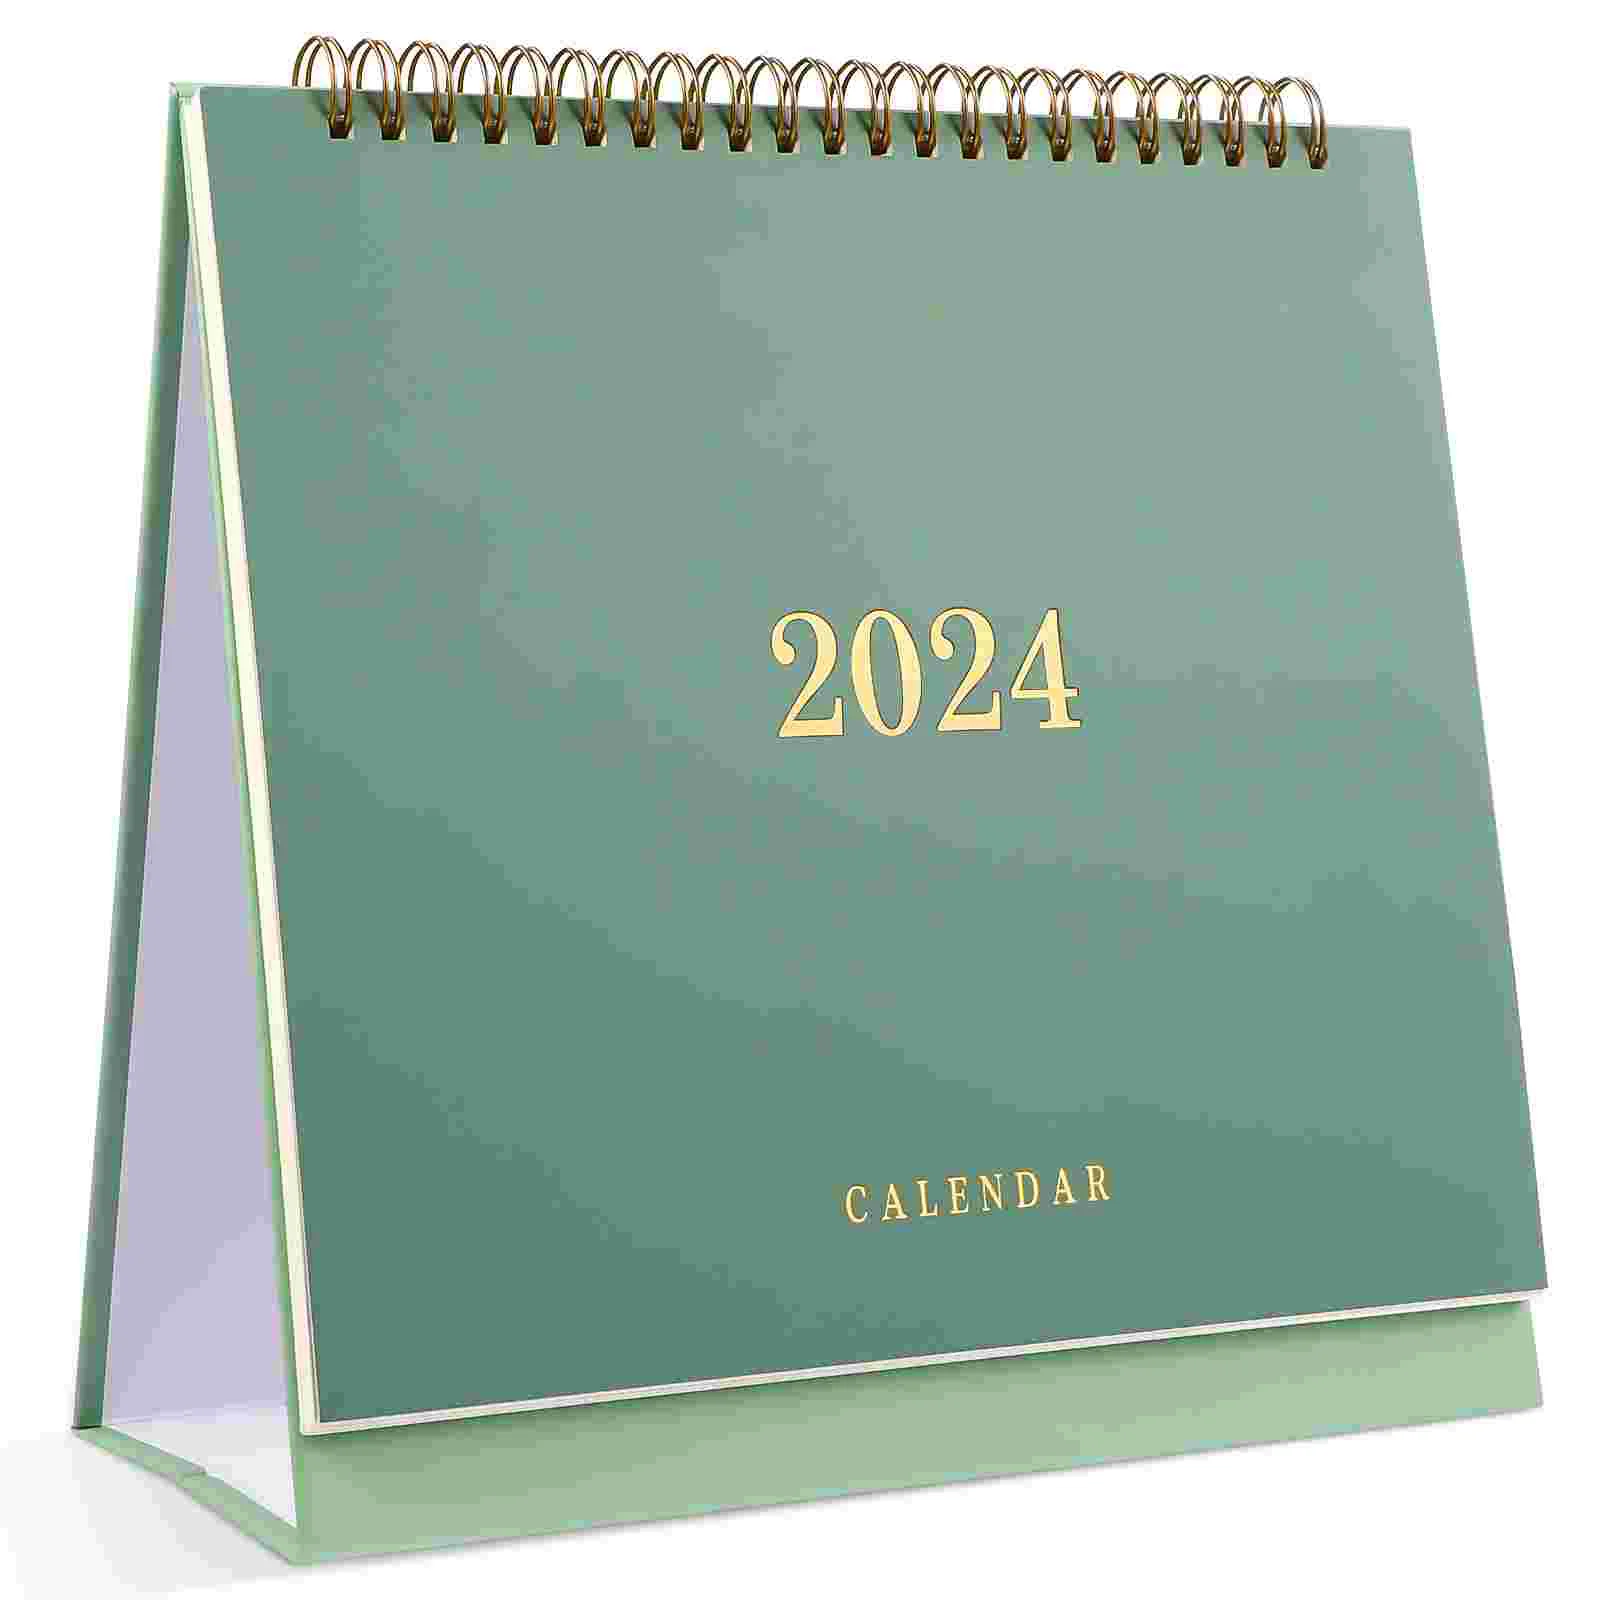 2024-2025 Ежемесячный календарь с июля 2024 г. Декабрь 2025 г. Настольный календарь Standing Flip